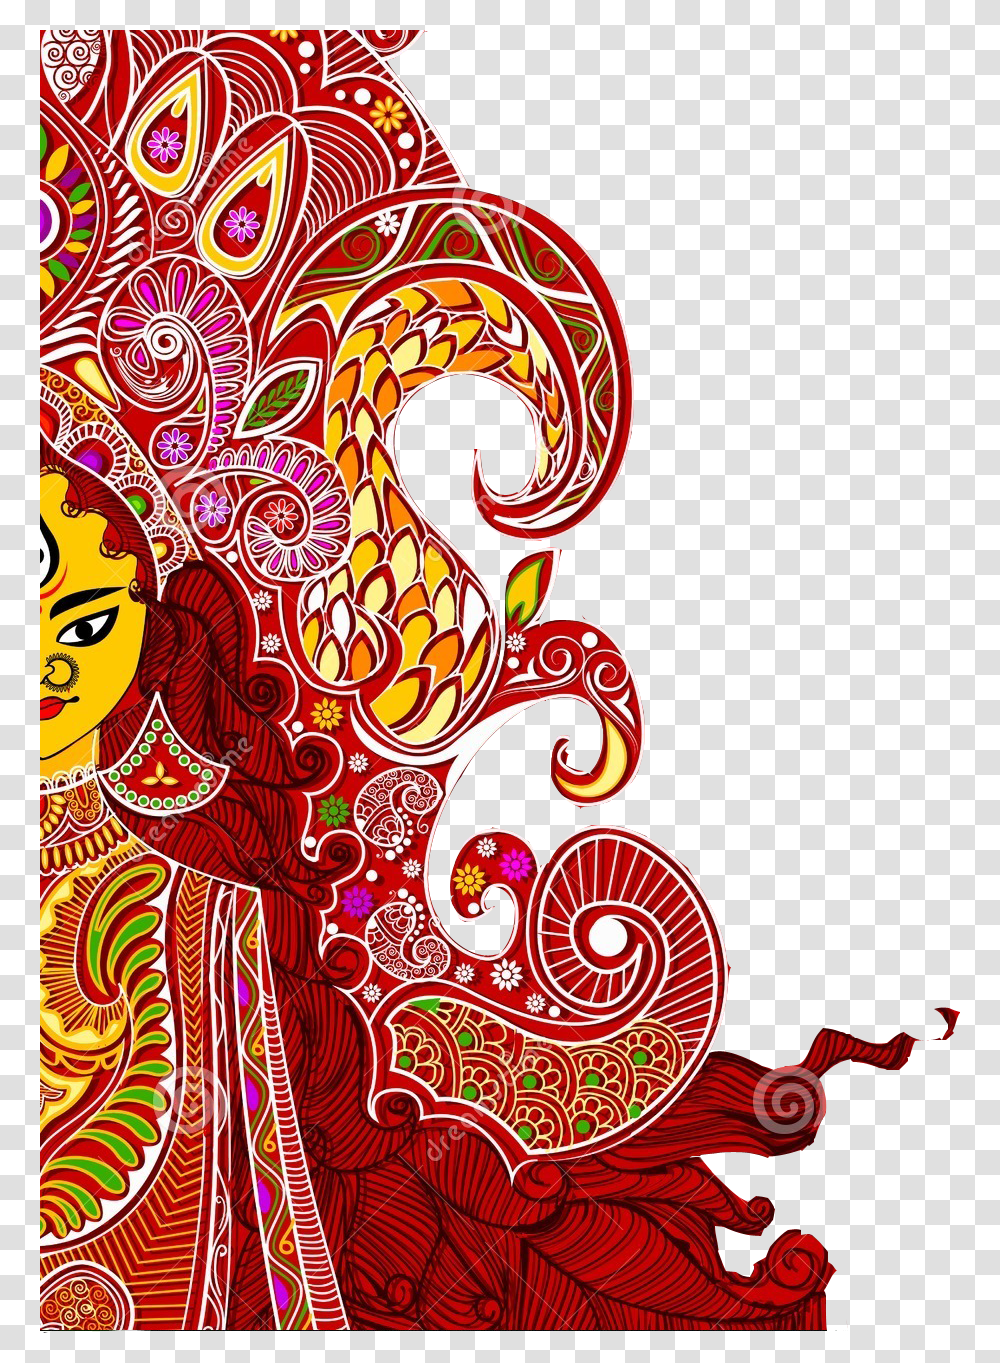 Durga Free Vector Download Happy Dussehra Full Hd, Pattern, Floral Design Transparent Png